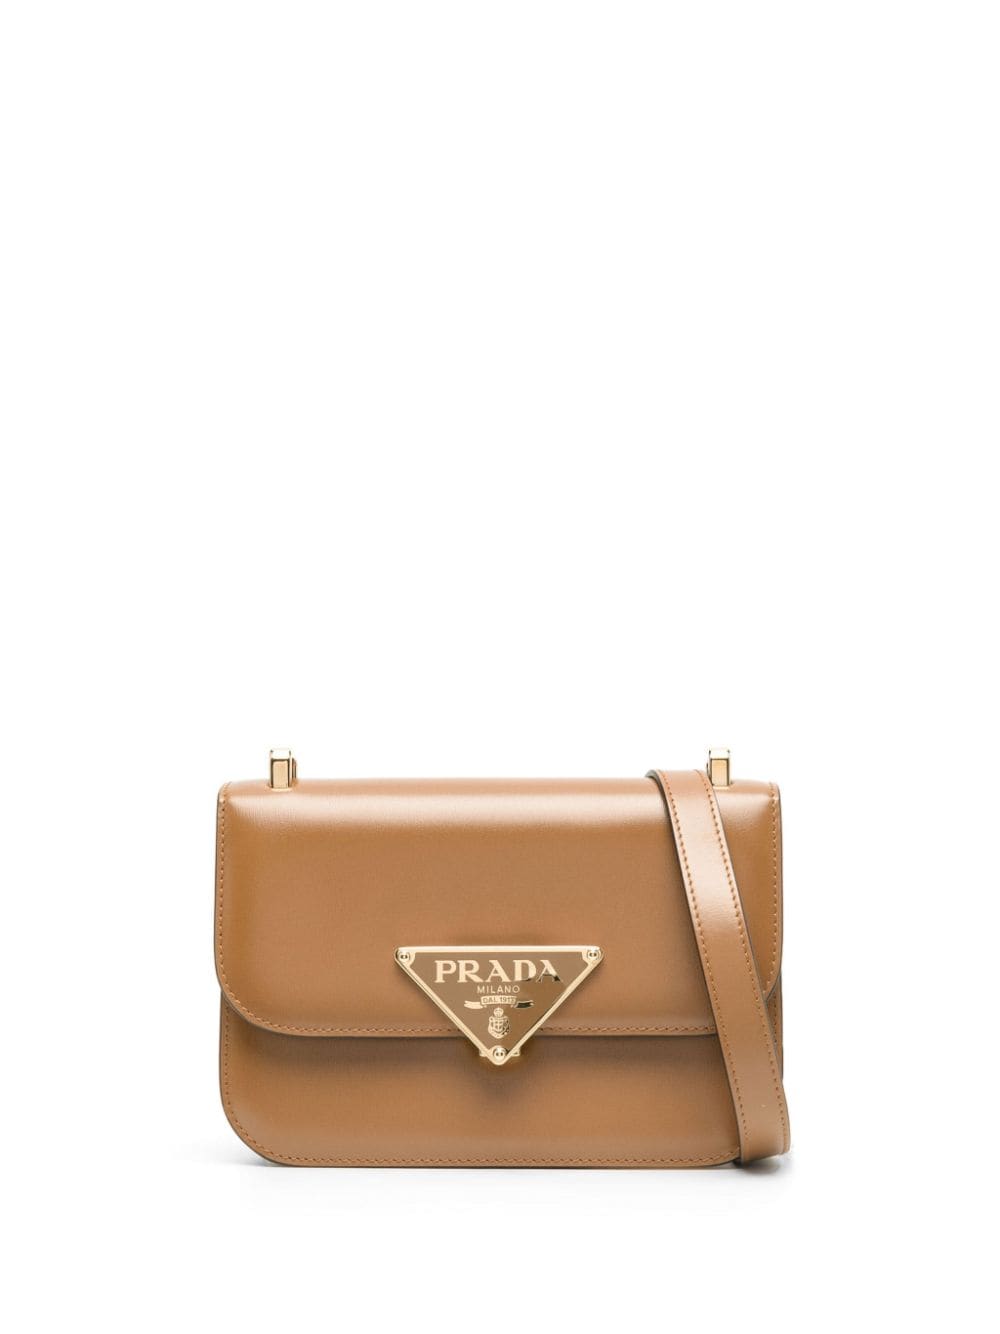 Prada Identity logo-plaque shoulder bag, Prada, Eraldo.com